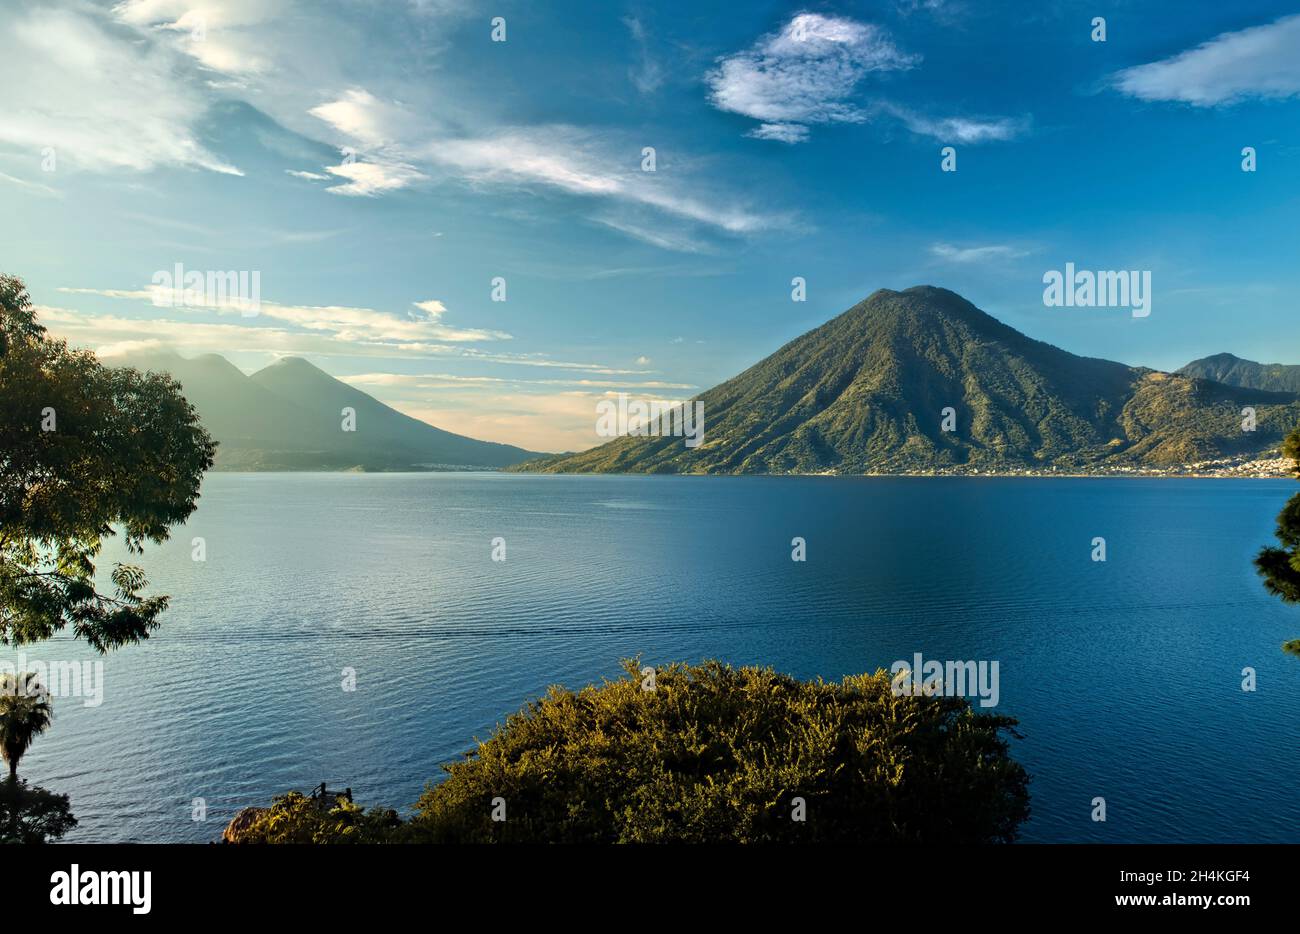 Vista del volcán San Pedro y el lago Atitlán, Solola, Guatemala. Foto de stock